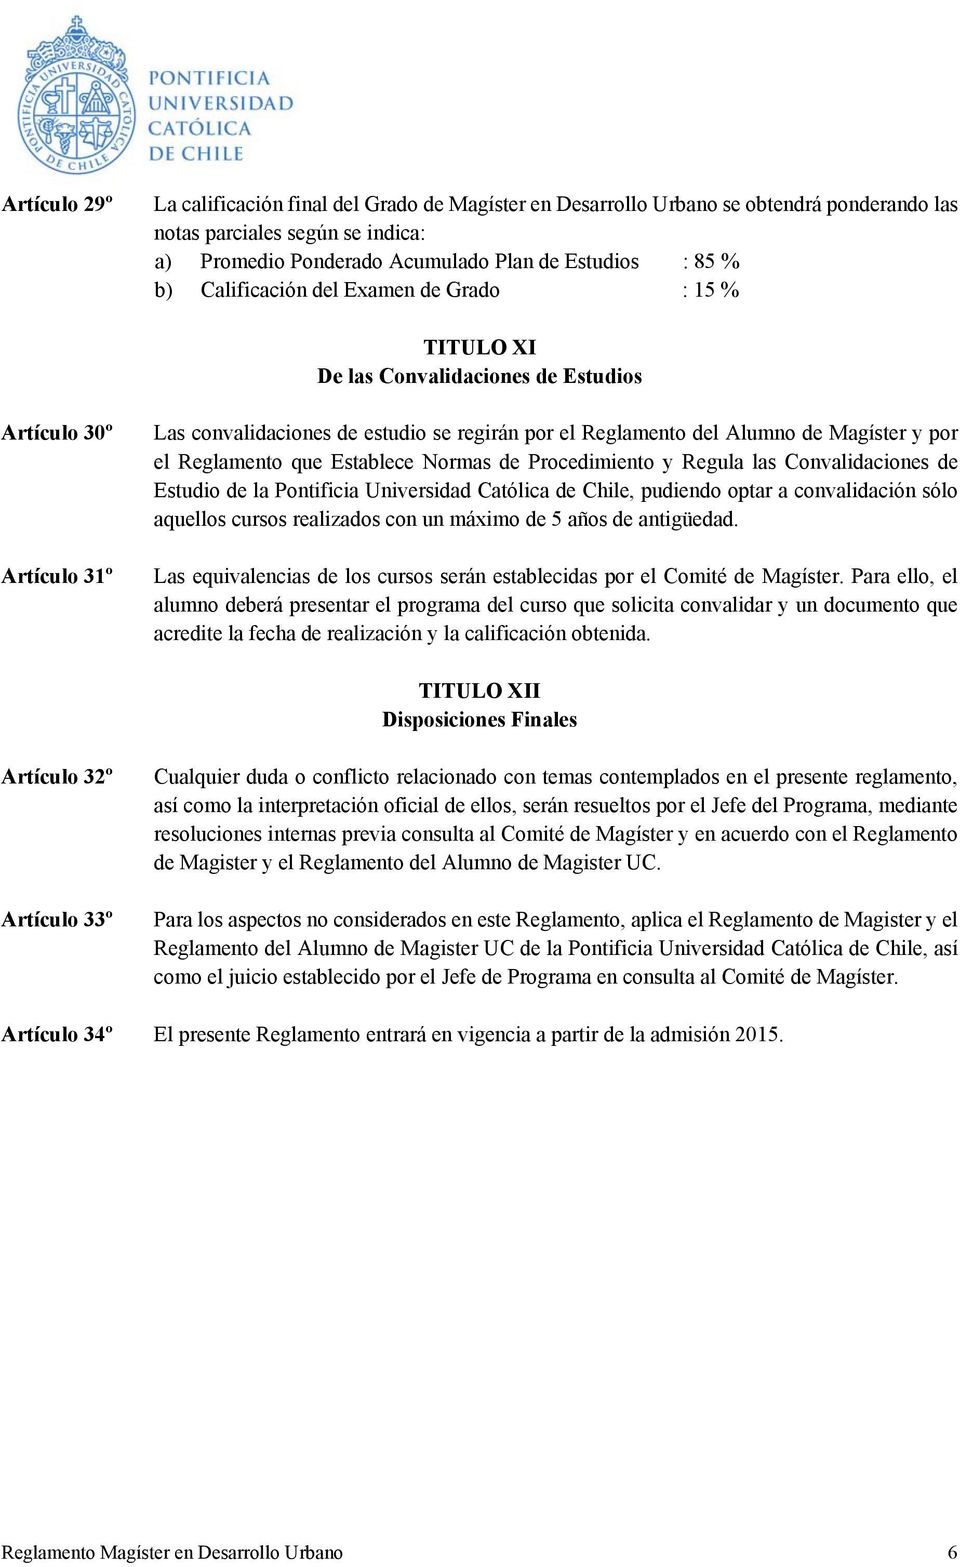 el Reglamento que Establece Normas de Procedimiento y Regula las Convalidaciones de Estudio de la Pontificia Universidad Católica de Chile, pudiendo optar a convalidación sólo aquellos cursos